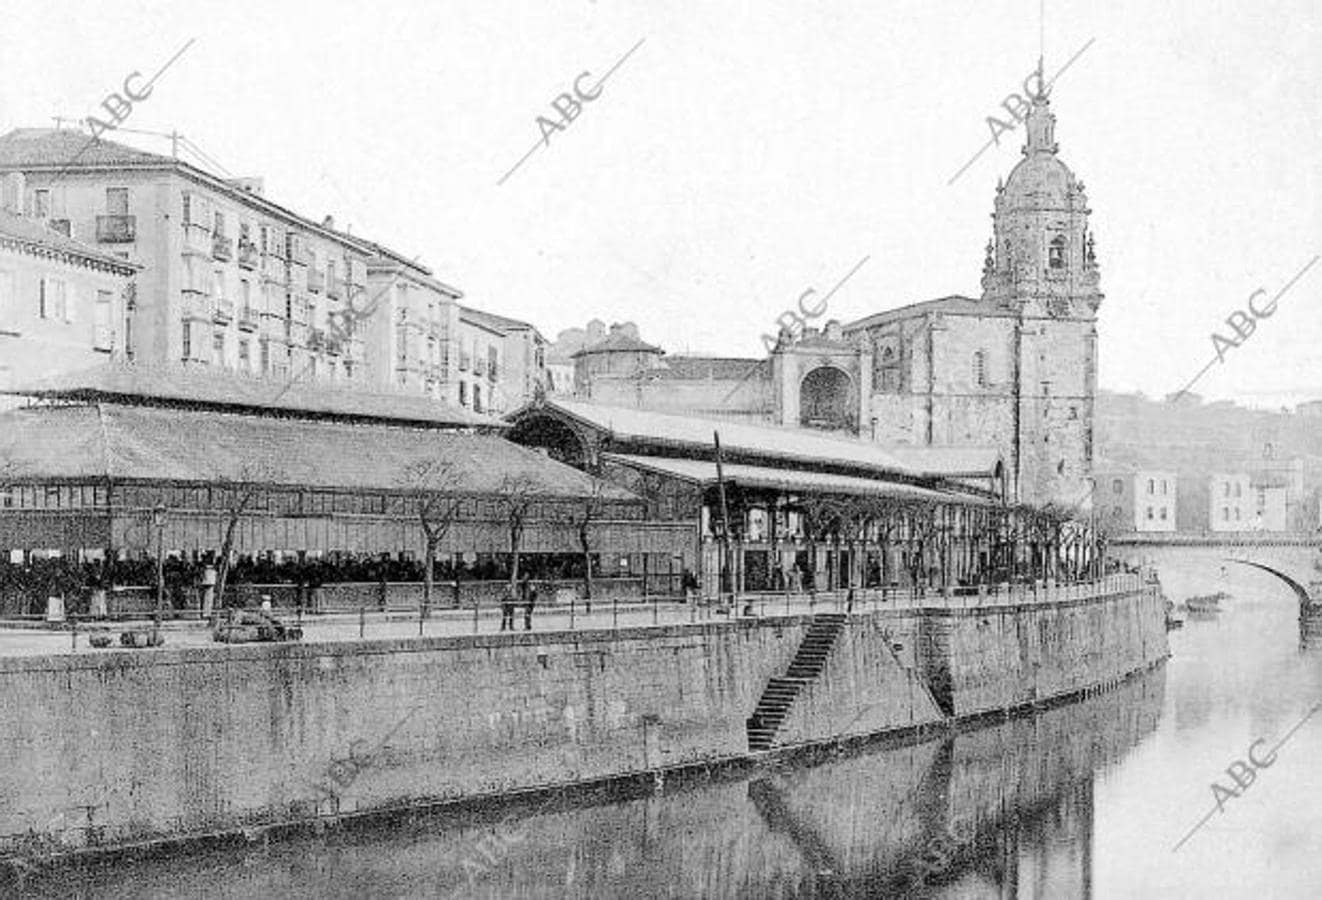 Plaza del mercado e iglesia de San Antón en Bilbao, en los primeros años del siglo XX